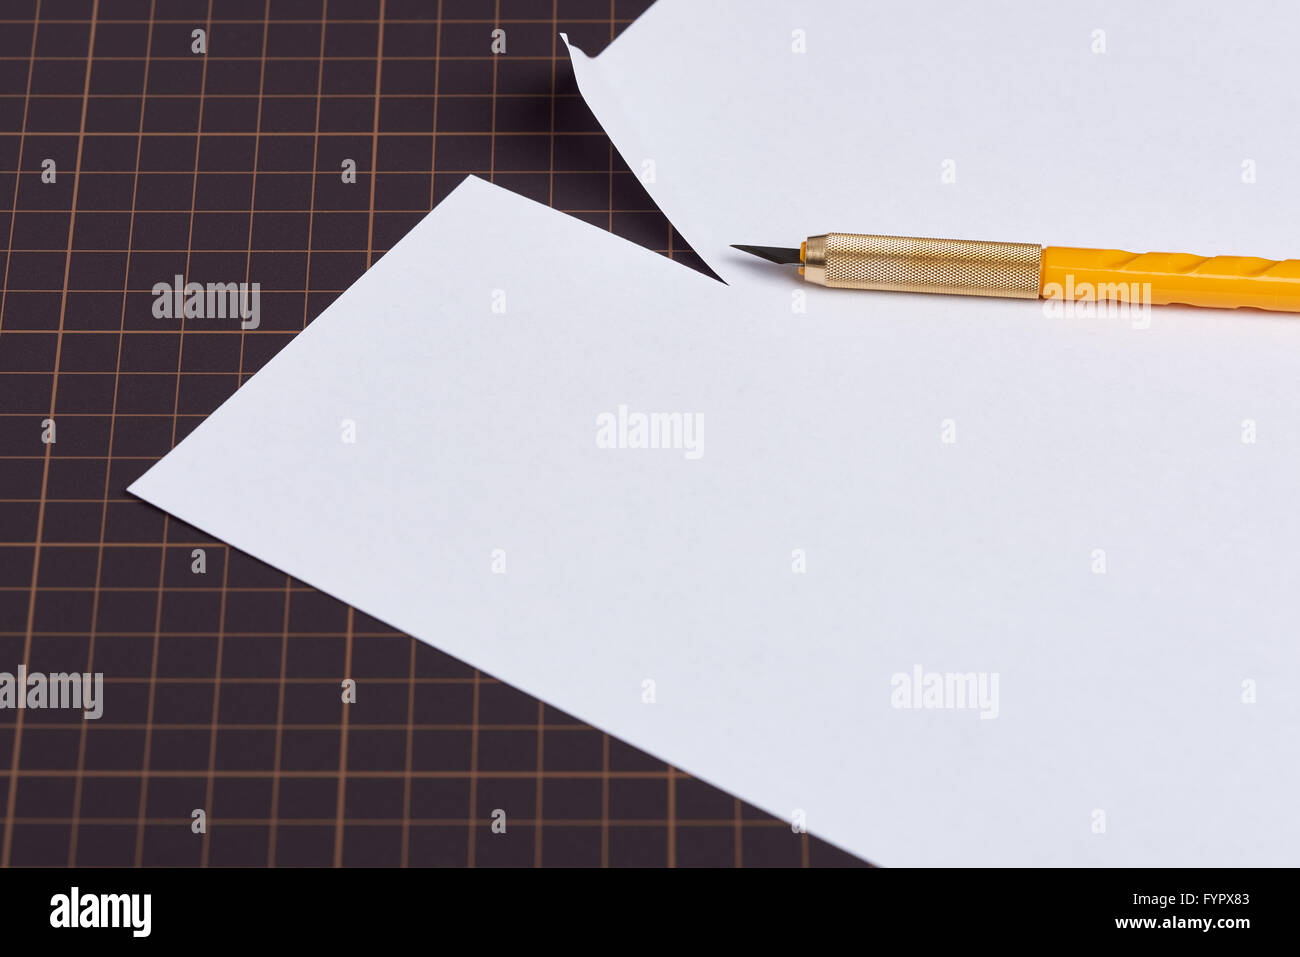 Ein weißes Blatt Papier, das auf eine Schneideunterlage mit einem Messer mit einem gelben Griff oben drauf sitzen geschnitten worden ist. Stockfoto